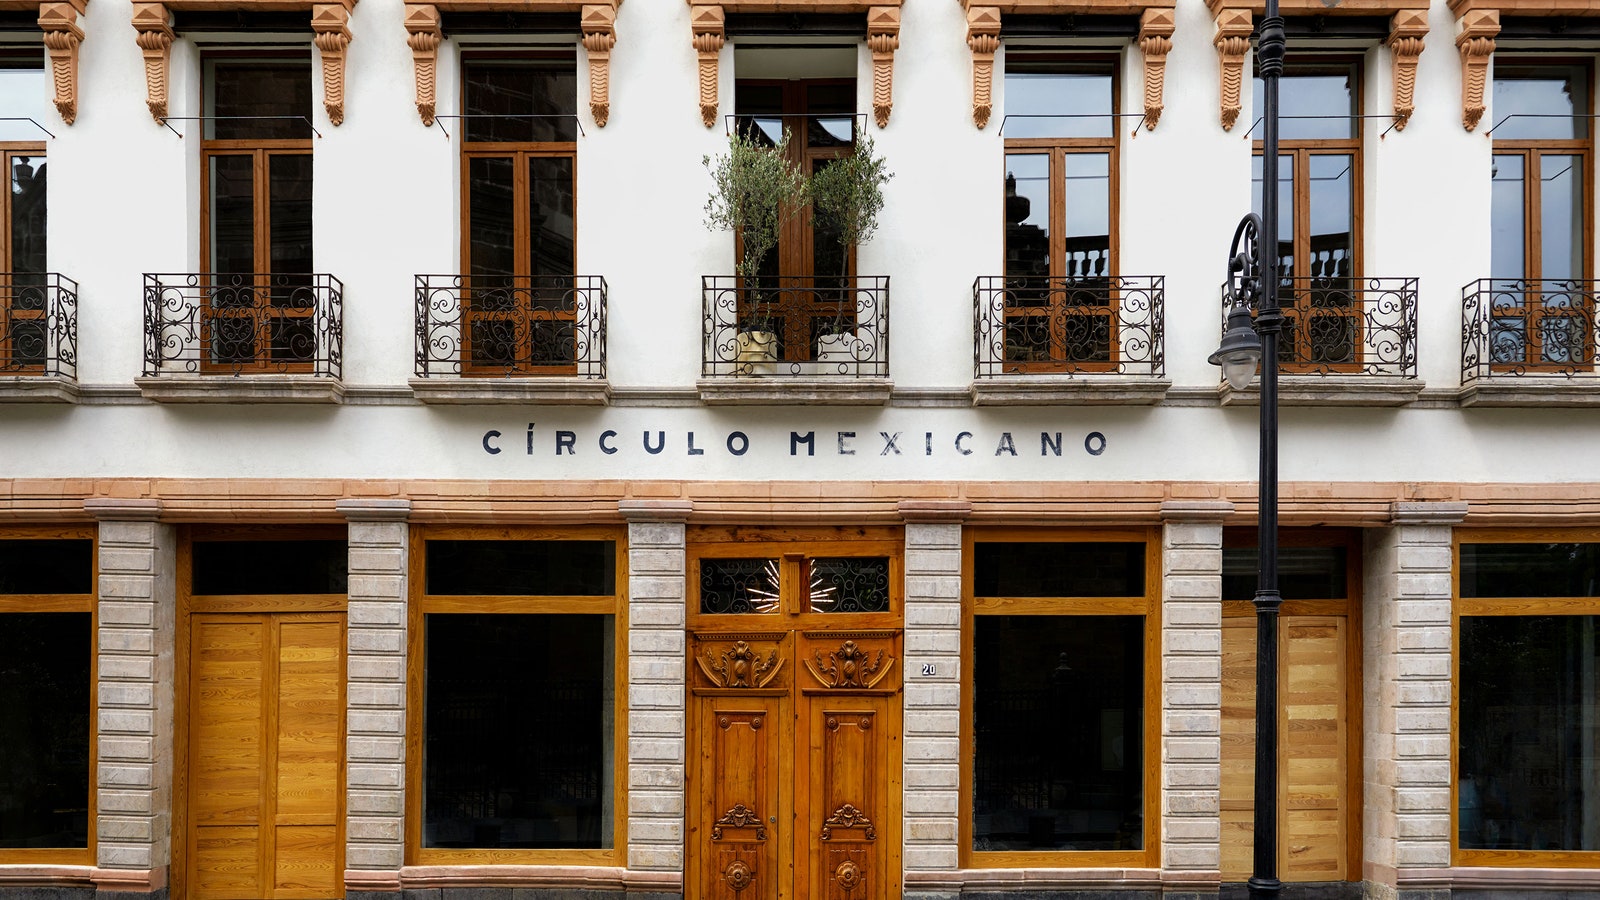 Círculo Mexicano Mexico City exterior